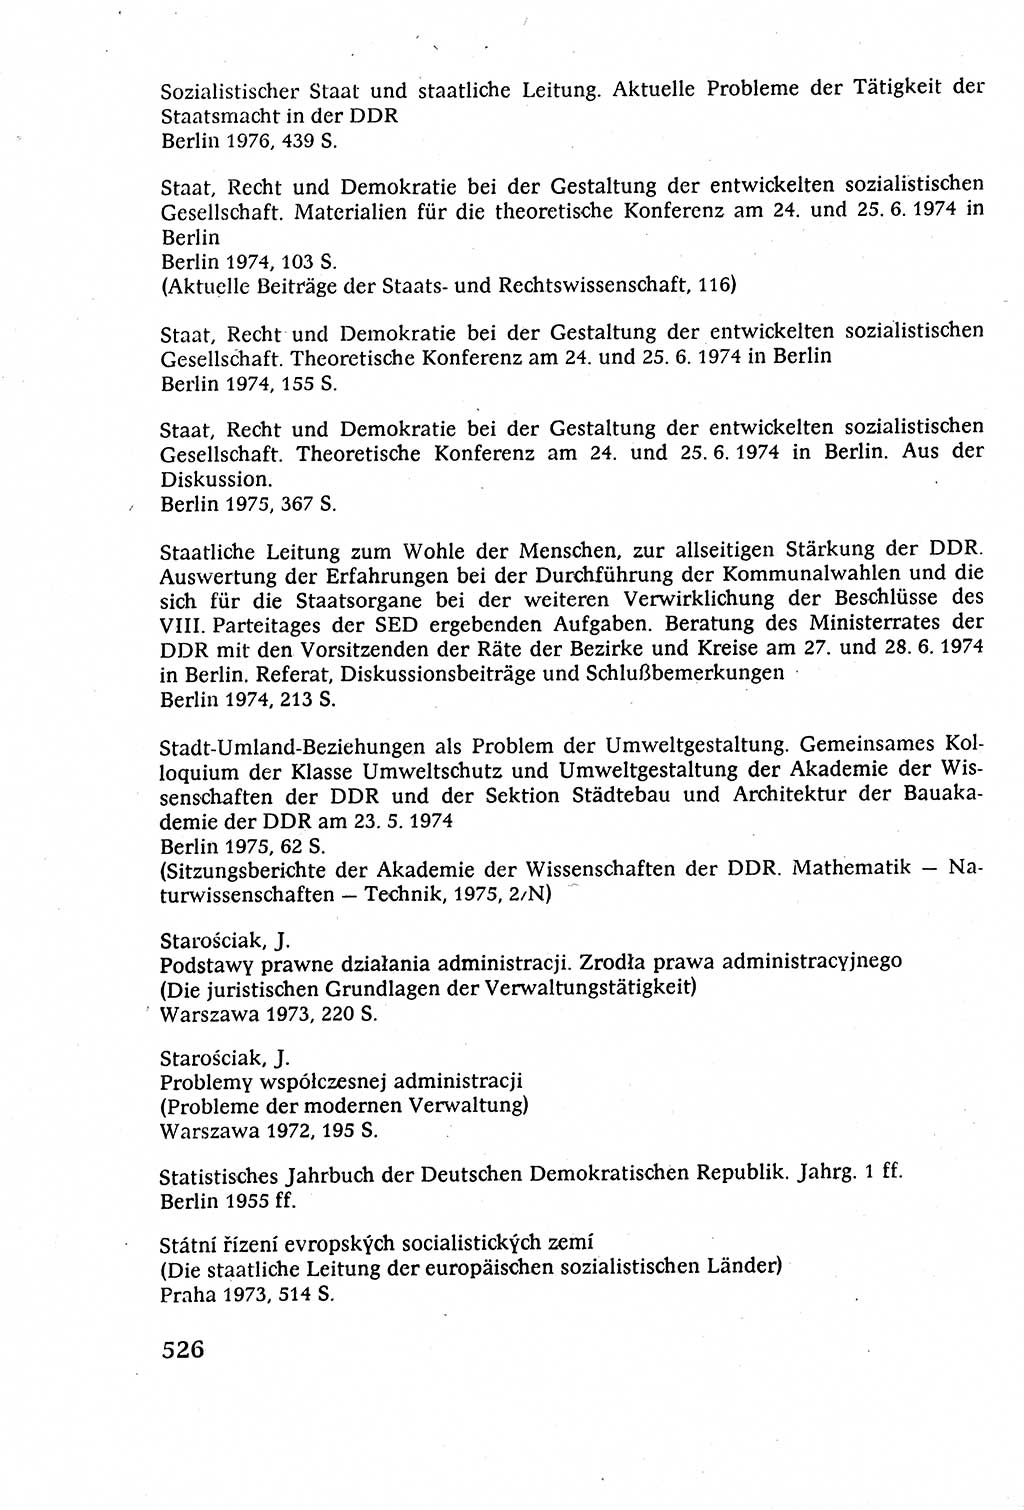 Staatsrecht der DDR (Deutsche Demokratische Republik), Lehrbuch 1977, Seite 526 (St.-R. DDR Lb. 1977, S. 526)